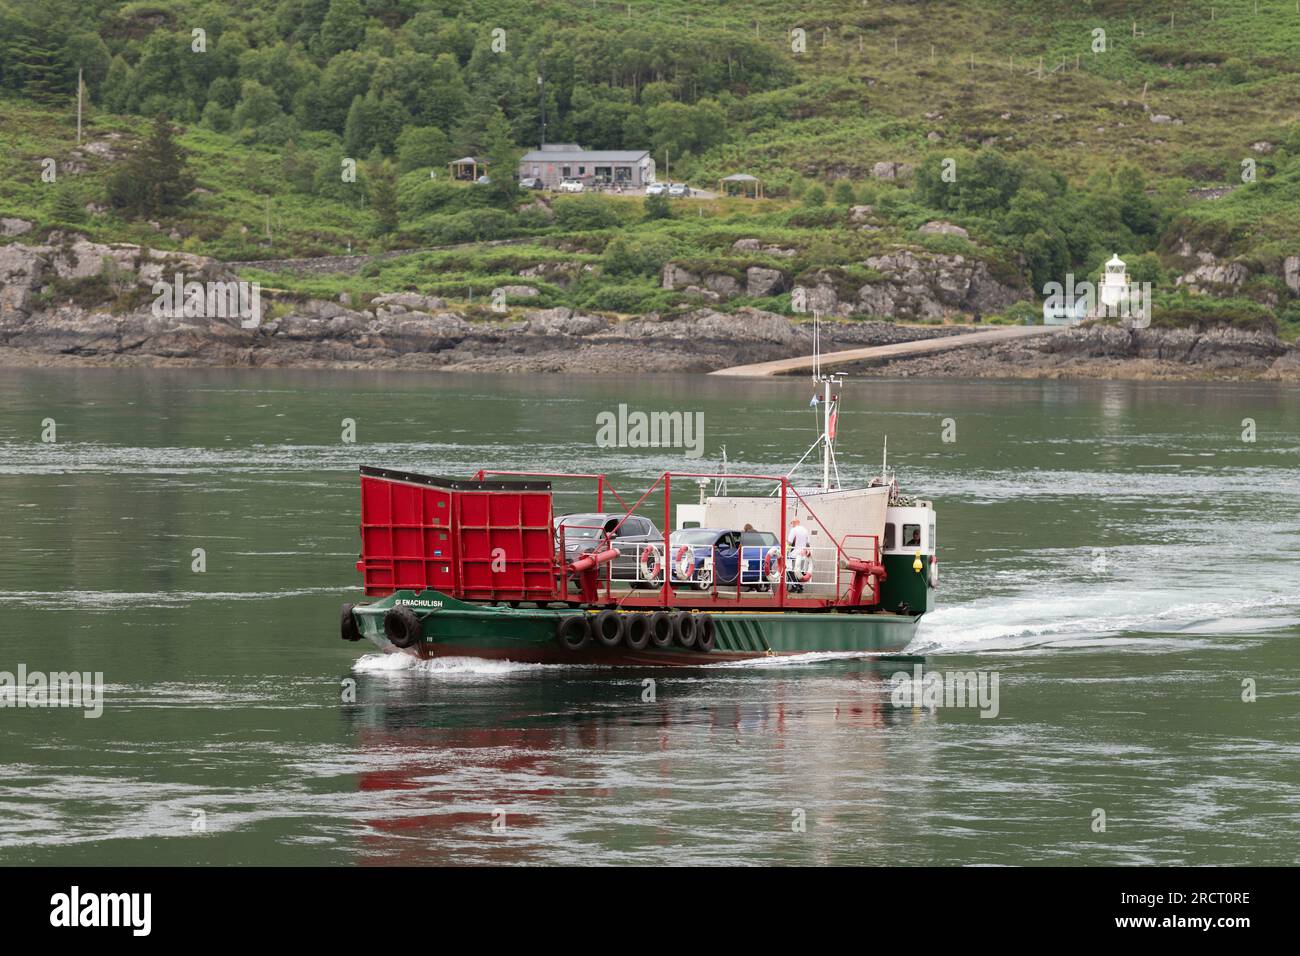 Le dernier ferry à voiture tournante à fonctionnement manuel au monde approche de l'île de Skye, traverse le détroit de Kylerhea depuis Glenelg Banque D'Images